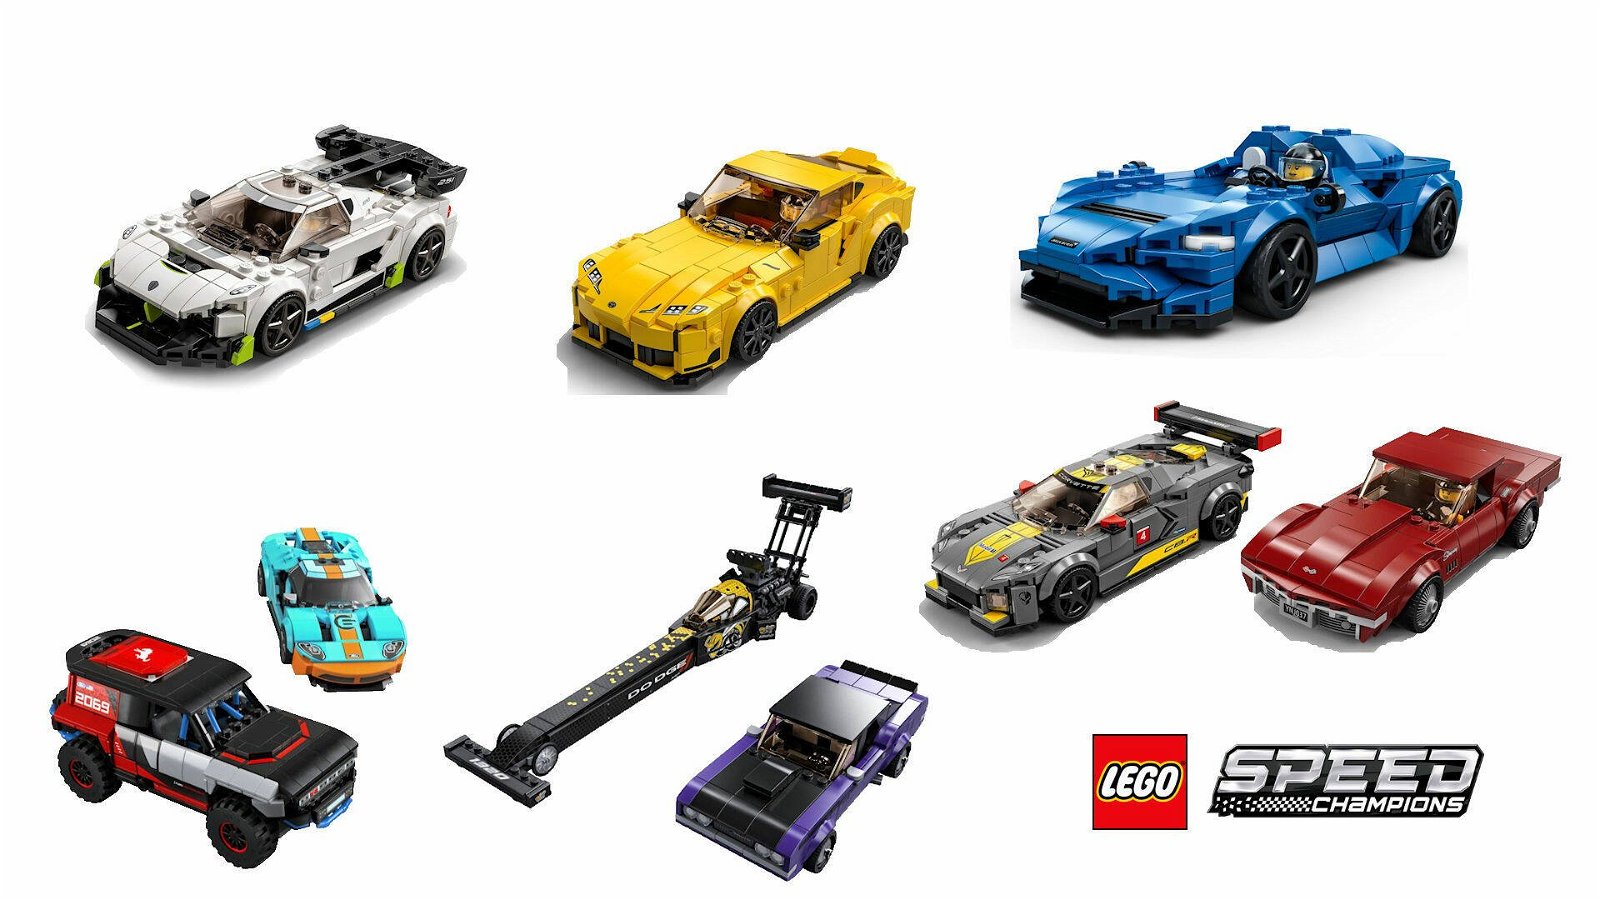 Immagine di LEGO MANIA. A tutto gas con i nuovi set Speed Champions!